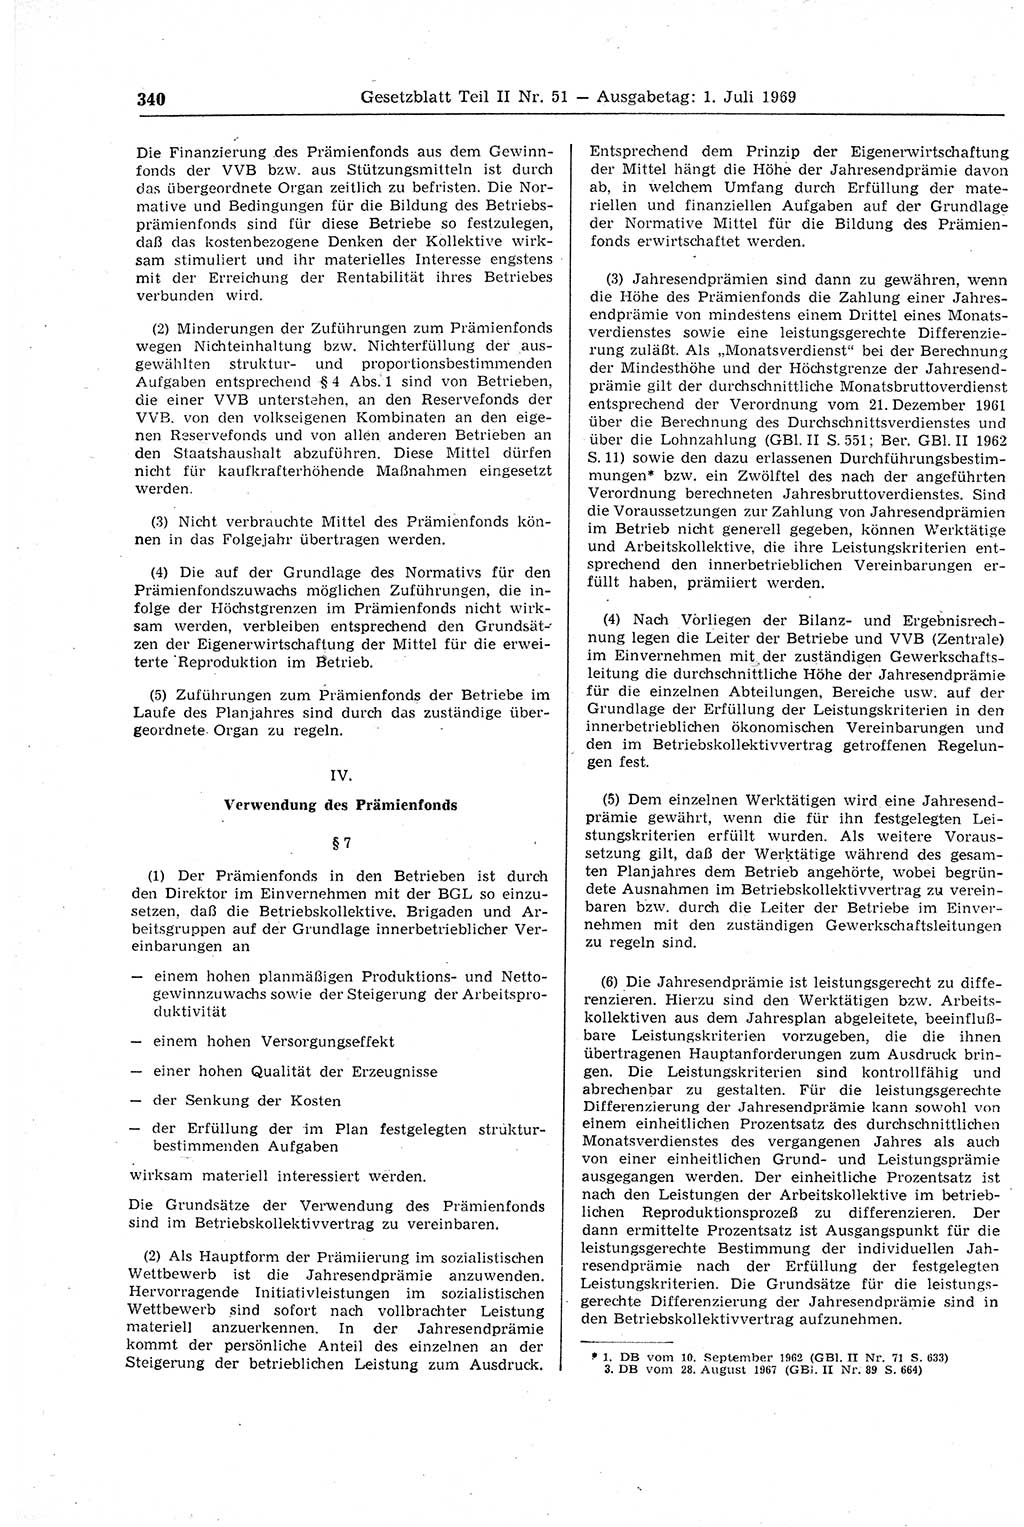 Gesetzblatt (GBl.) der Deutschen Demokratischen Republik (DDR) Teil ⅠⅠ 1969, Seite 340 (GBl. DDR ⅠⅠ 1969, S. 340)